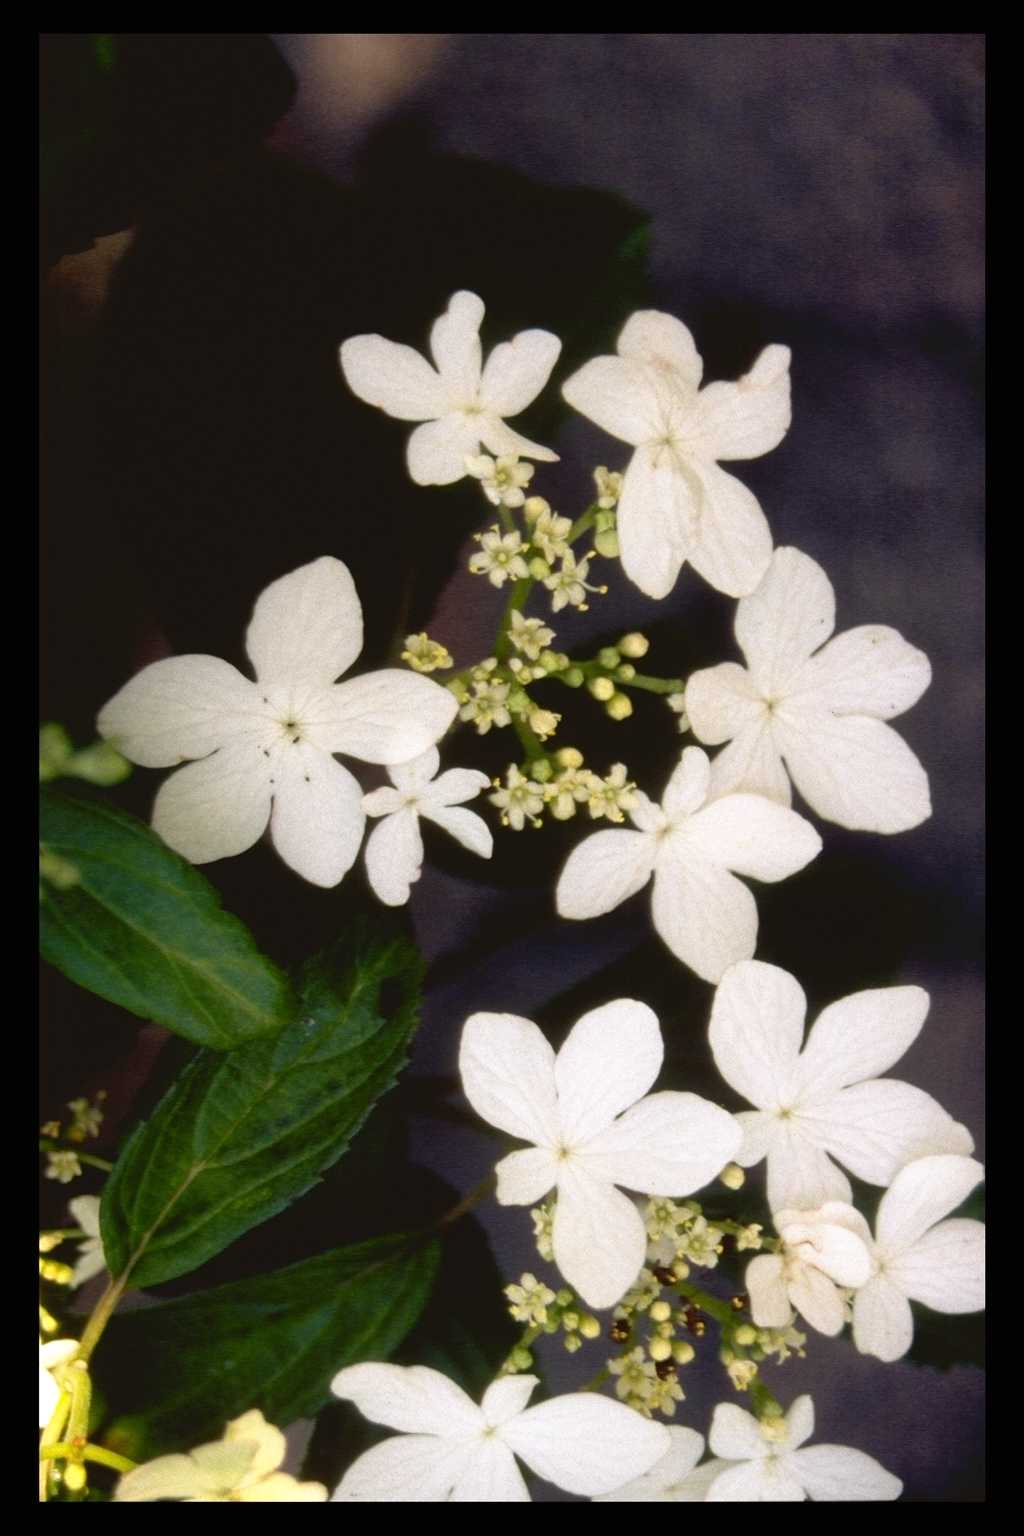 Viburnum plicatum ‘Watanabe’